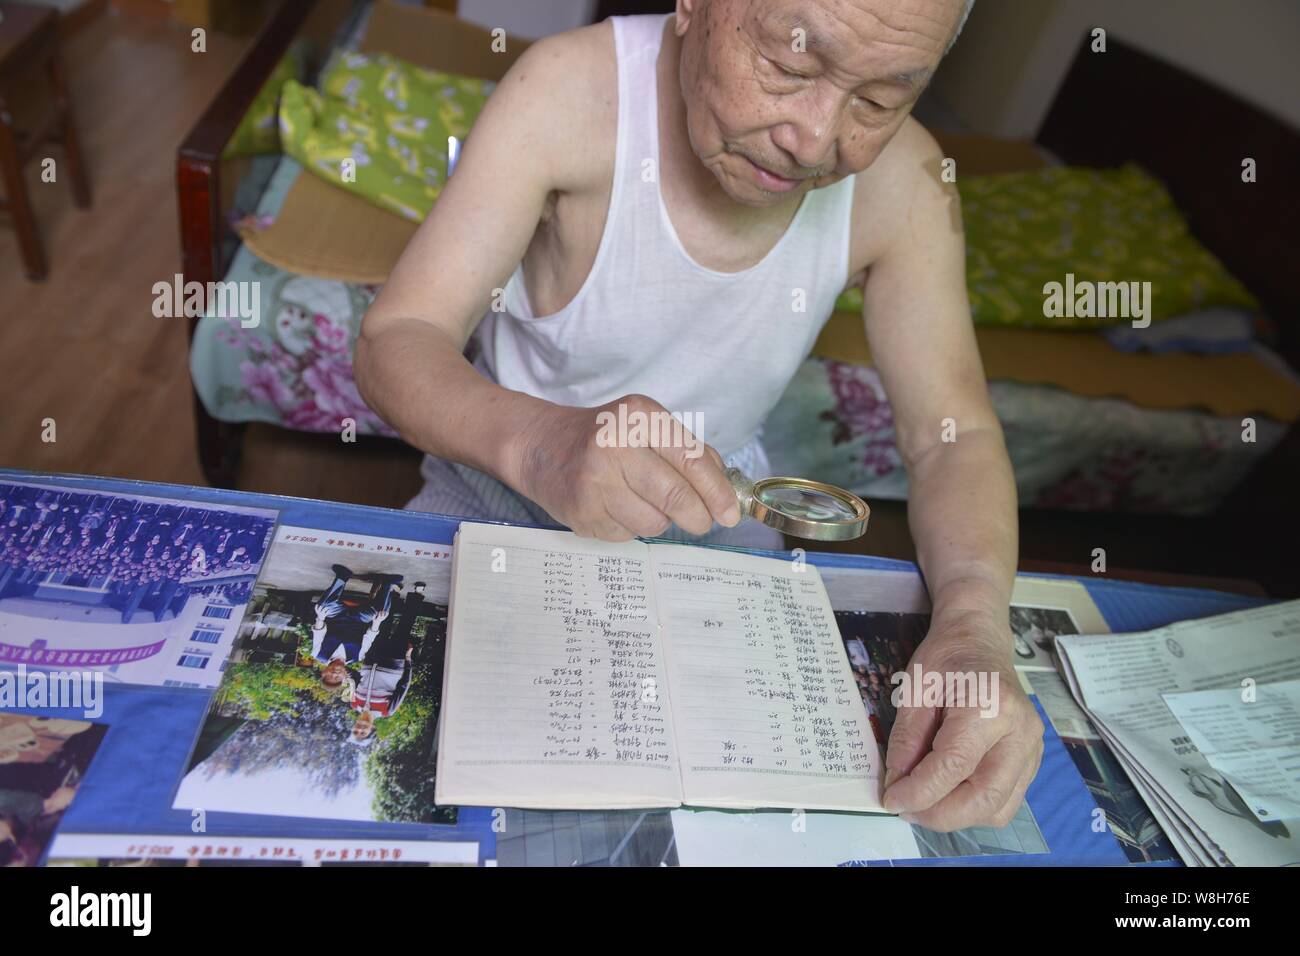 Il 97-anno-vecchio magazzino cinese investor Shi Kunsen guarda attentamente le info di negoziazione di azioni ha raccolto a casa nella città di Hangzhou, a est della Cina di Zhejia Foto Stock